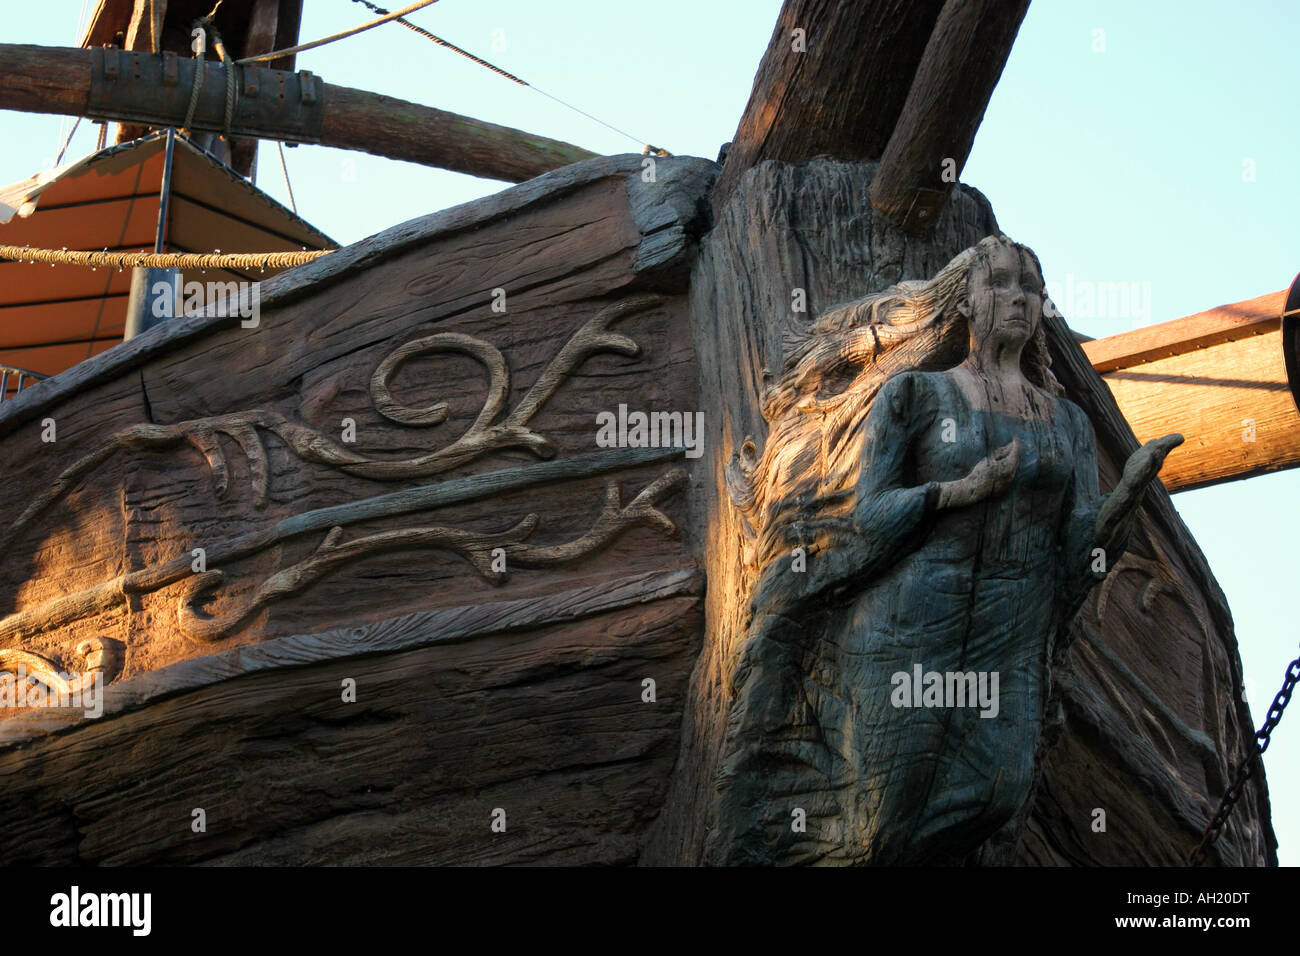 Piraten Schiff Details der Bug zeigt eine Frau statue Stockfoto